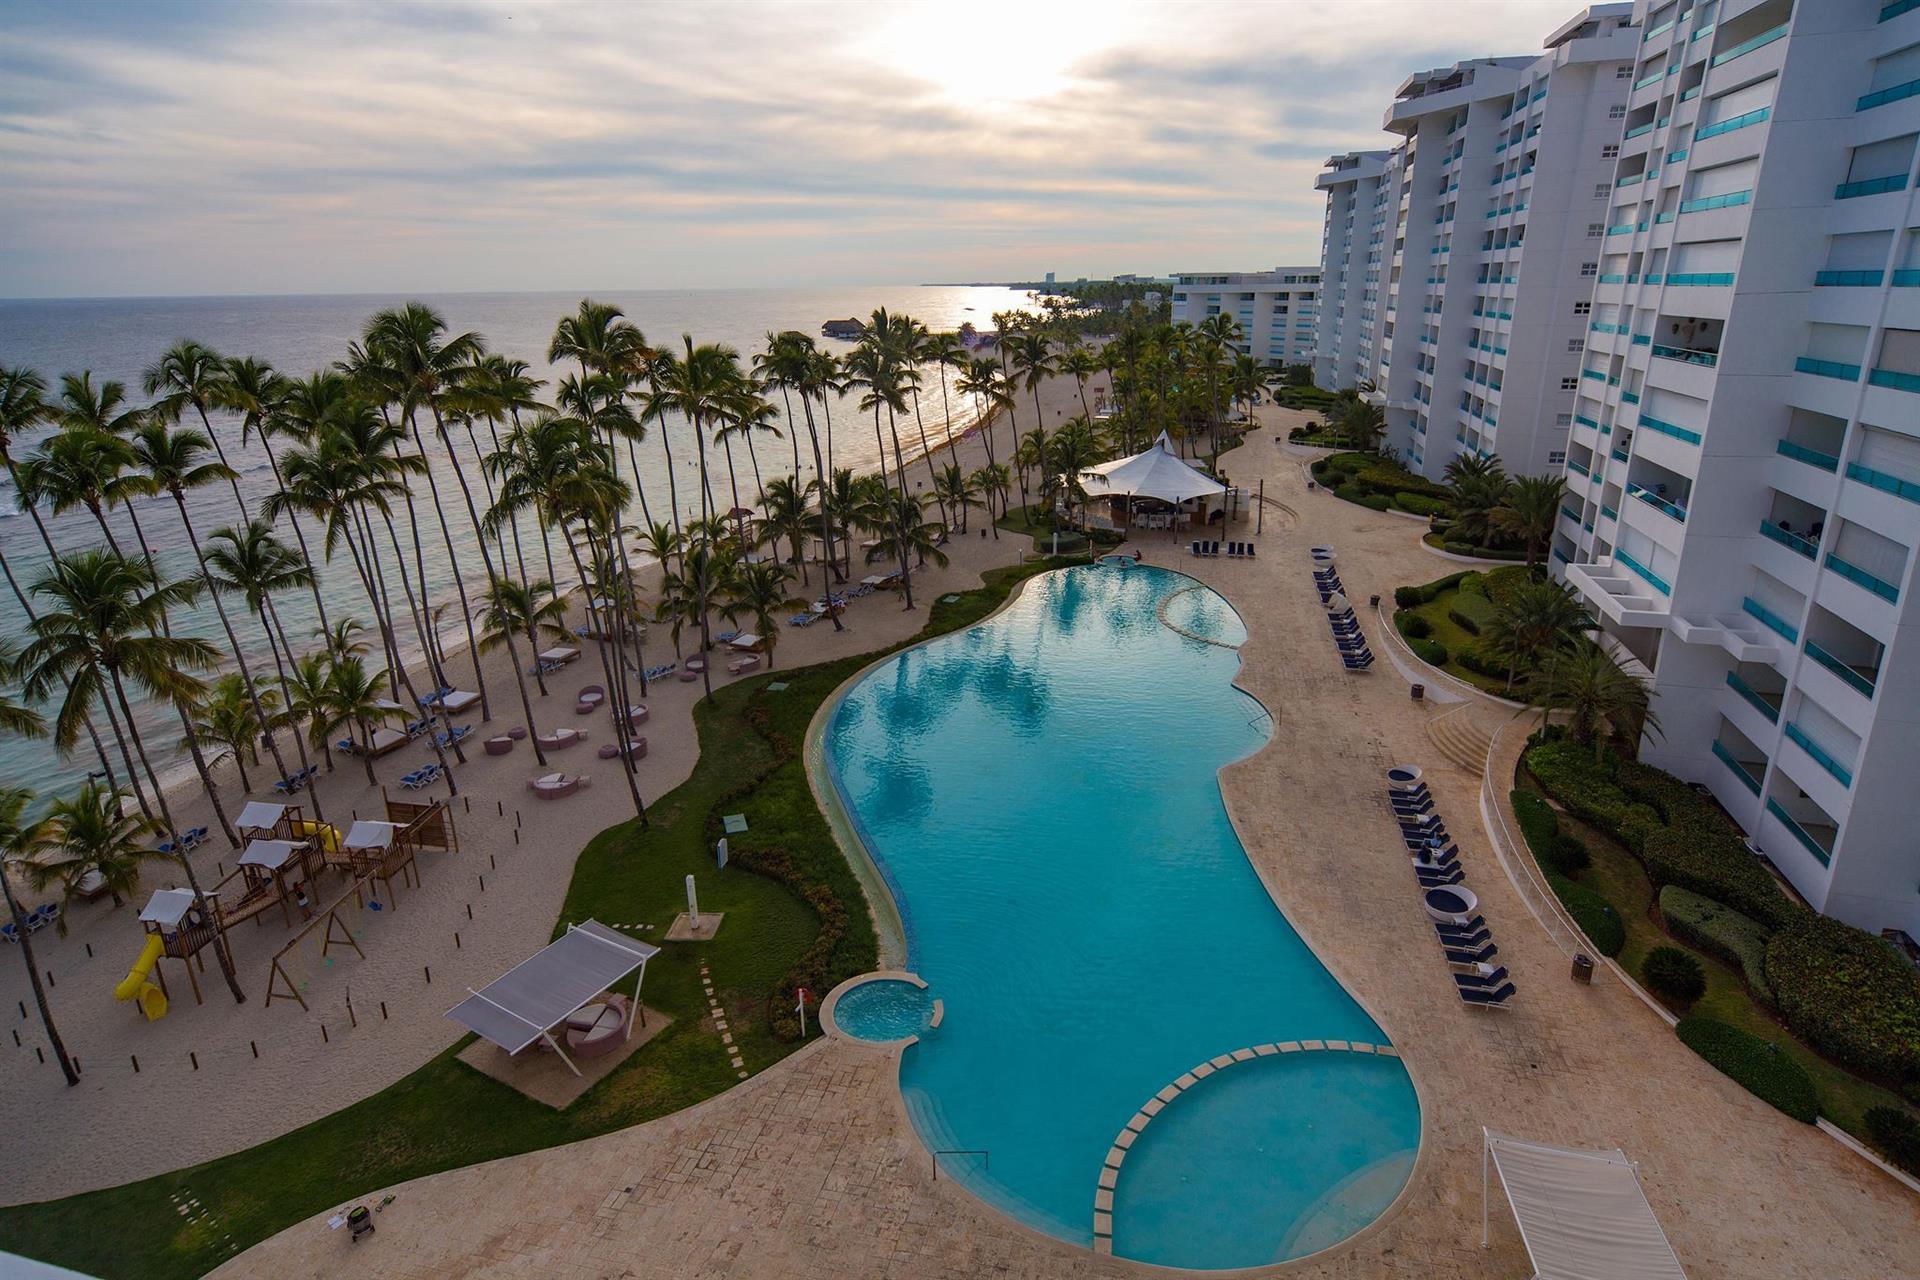 Costa caribe венесуэла. Gran Caribe Neptuno Triton Гавана. Costa Caribe Beach Hotel Resort 4 Венесуэла. Gran Caribe Neptuno & Triton 3*.